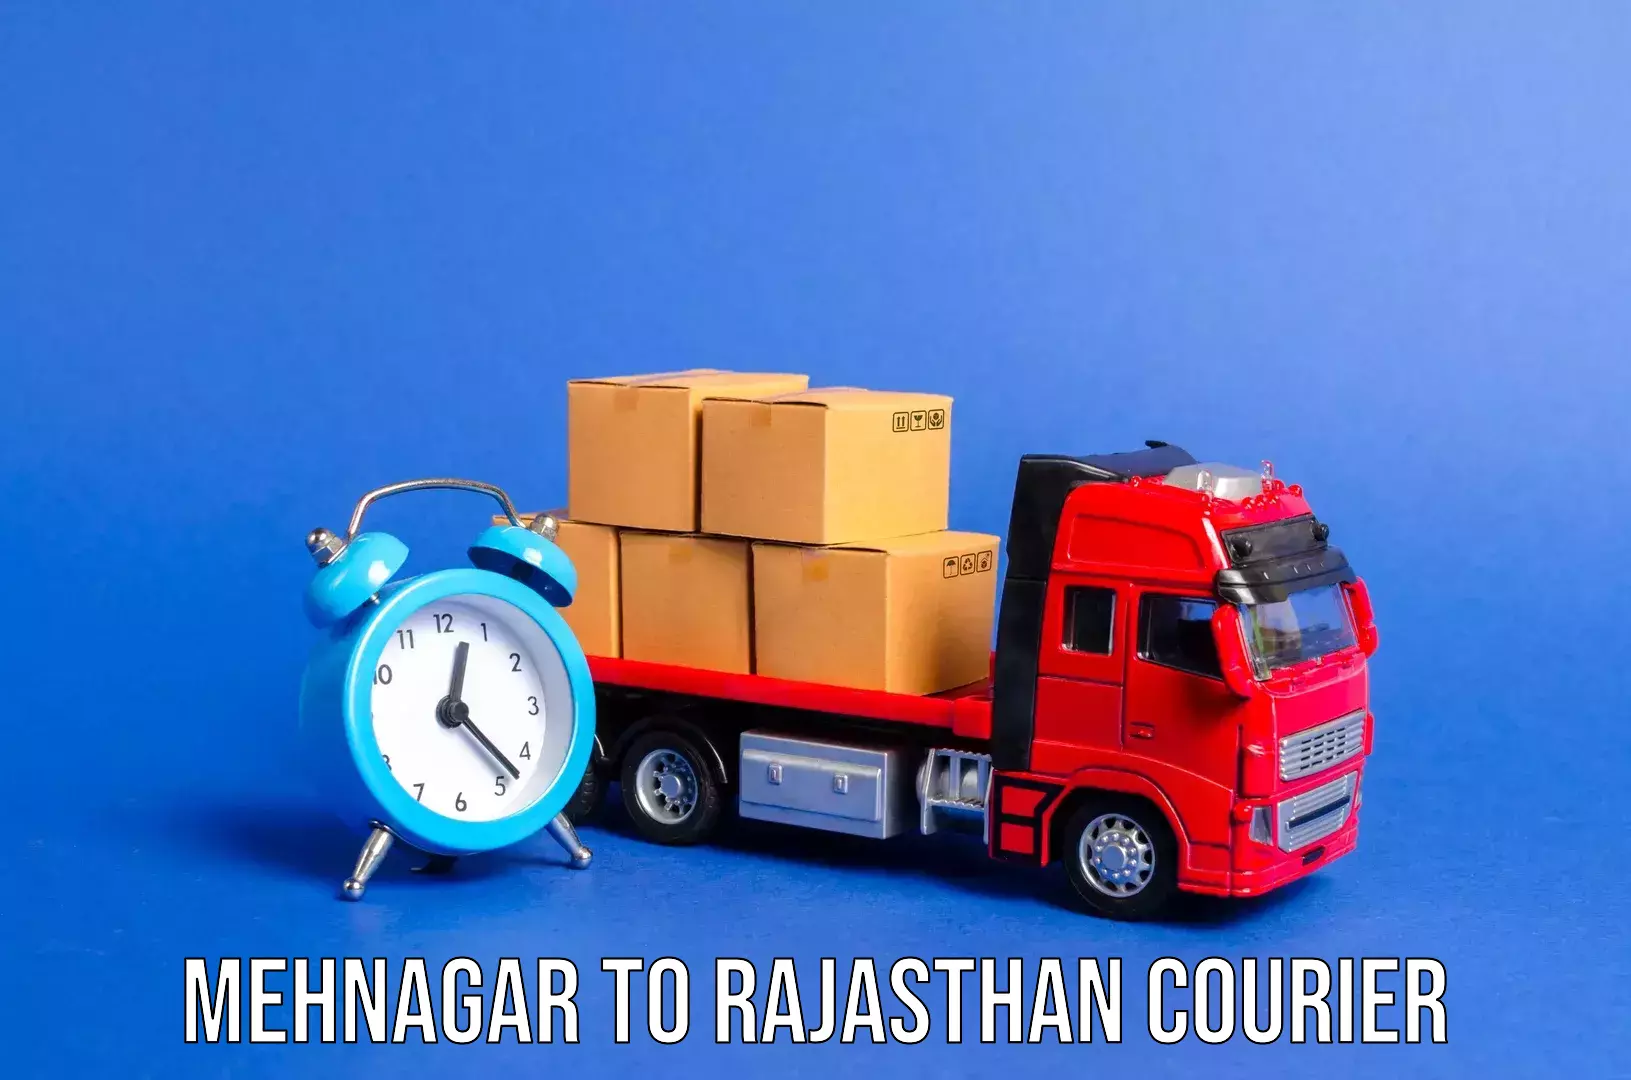 Baggage shipping rates calculator Mehnagar to Mathania